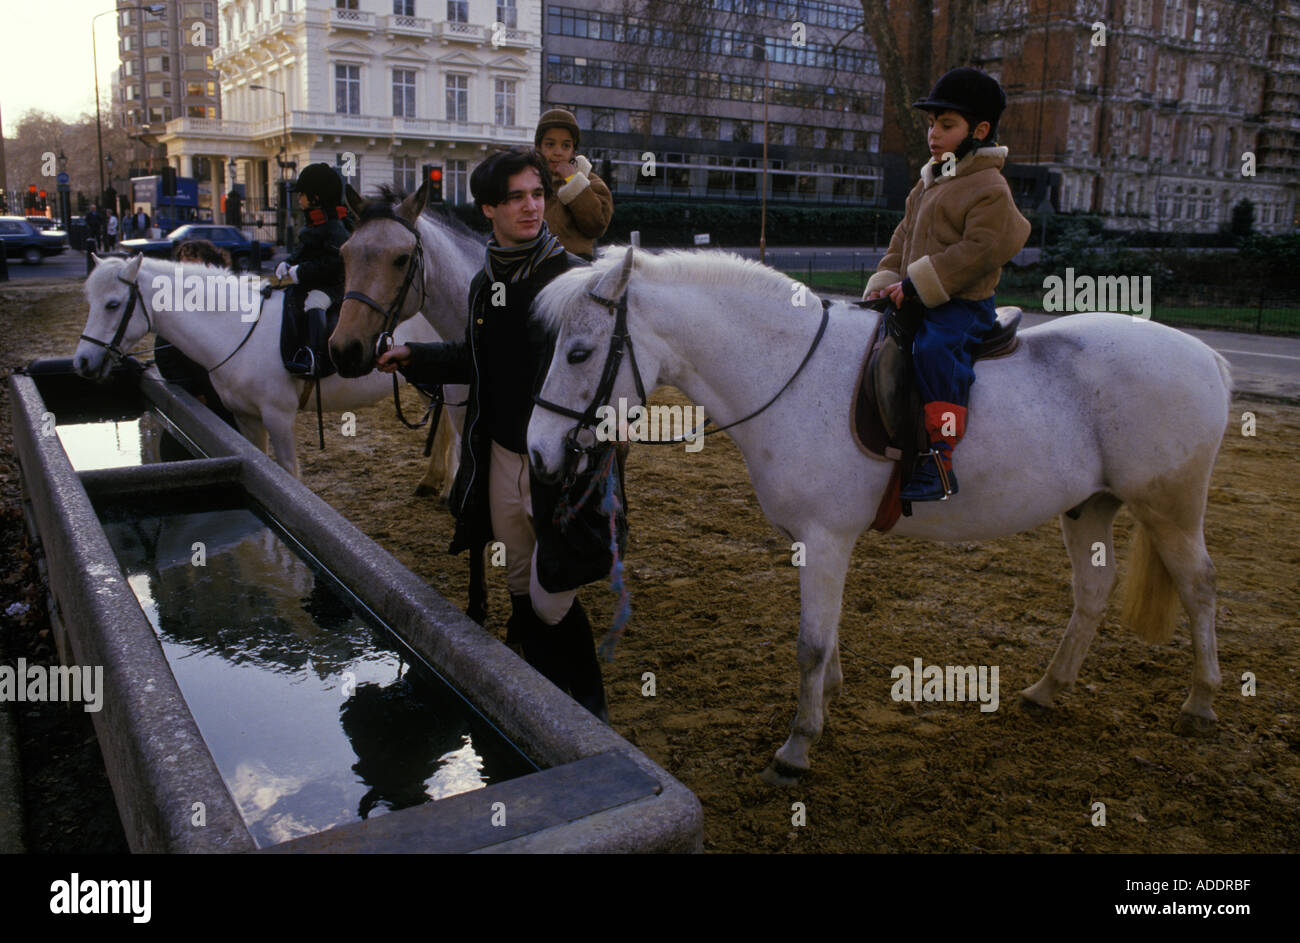 Rotten Row Hyde Park 1980s Londra. Bambini che prendono lezioni di equitazione a Hyde Park, portano i loro cavalli in una vasca d'acqua 1980 UK HOMER SYKES Foto Stock